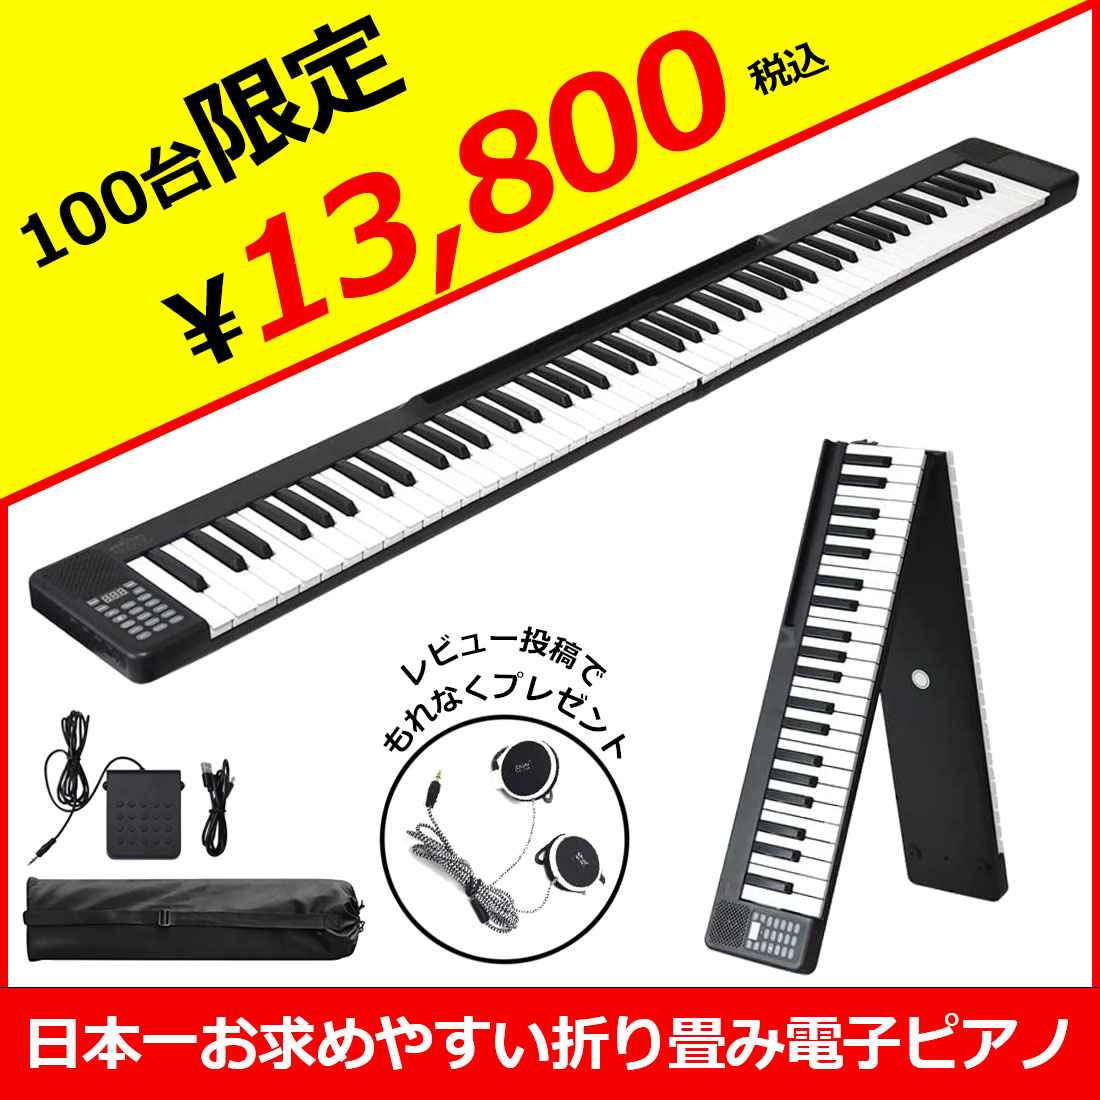 [ Япония один требуемый ...!] электронное пианино клавиатура 88 клавиатура беспроводной складной ON-THE-GO черный [ наушники педаль переносная сумка имеется ]